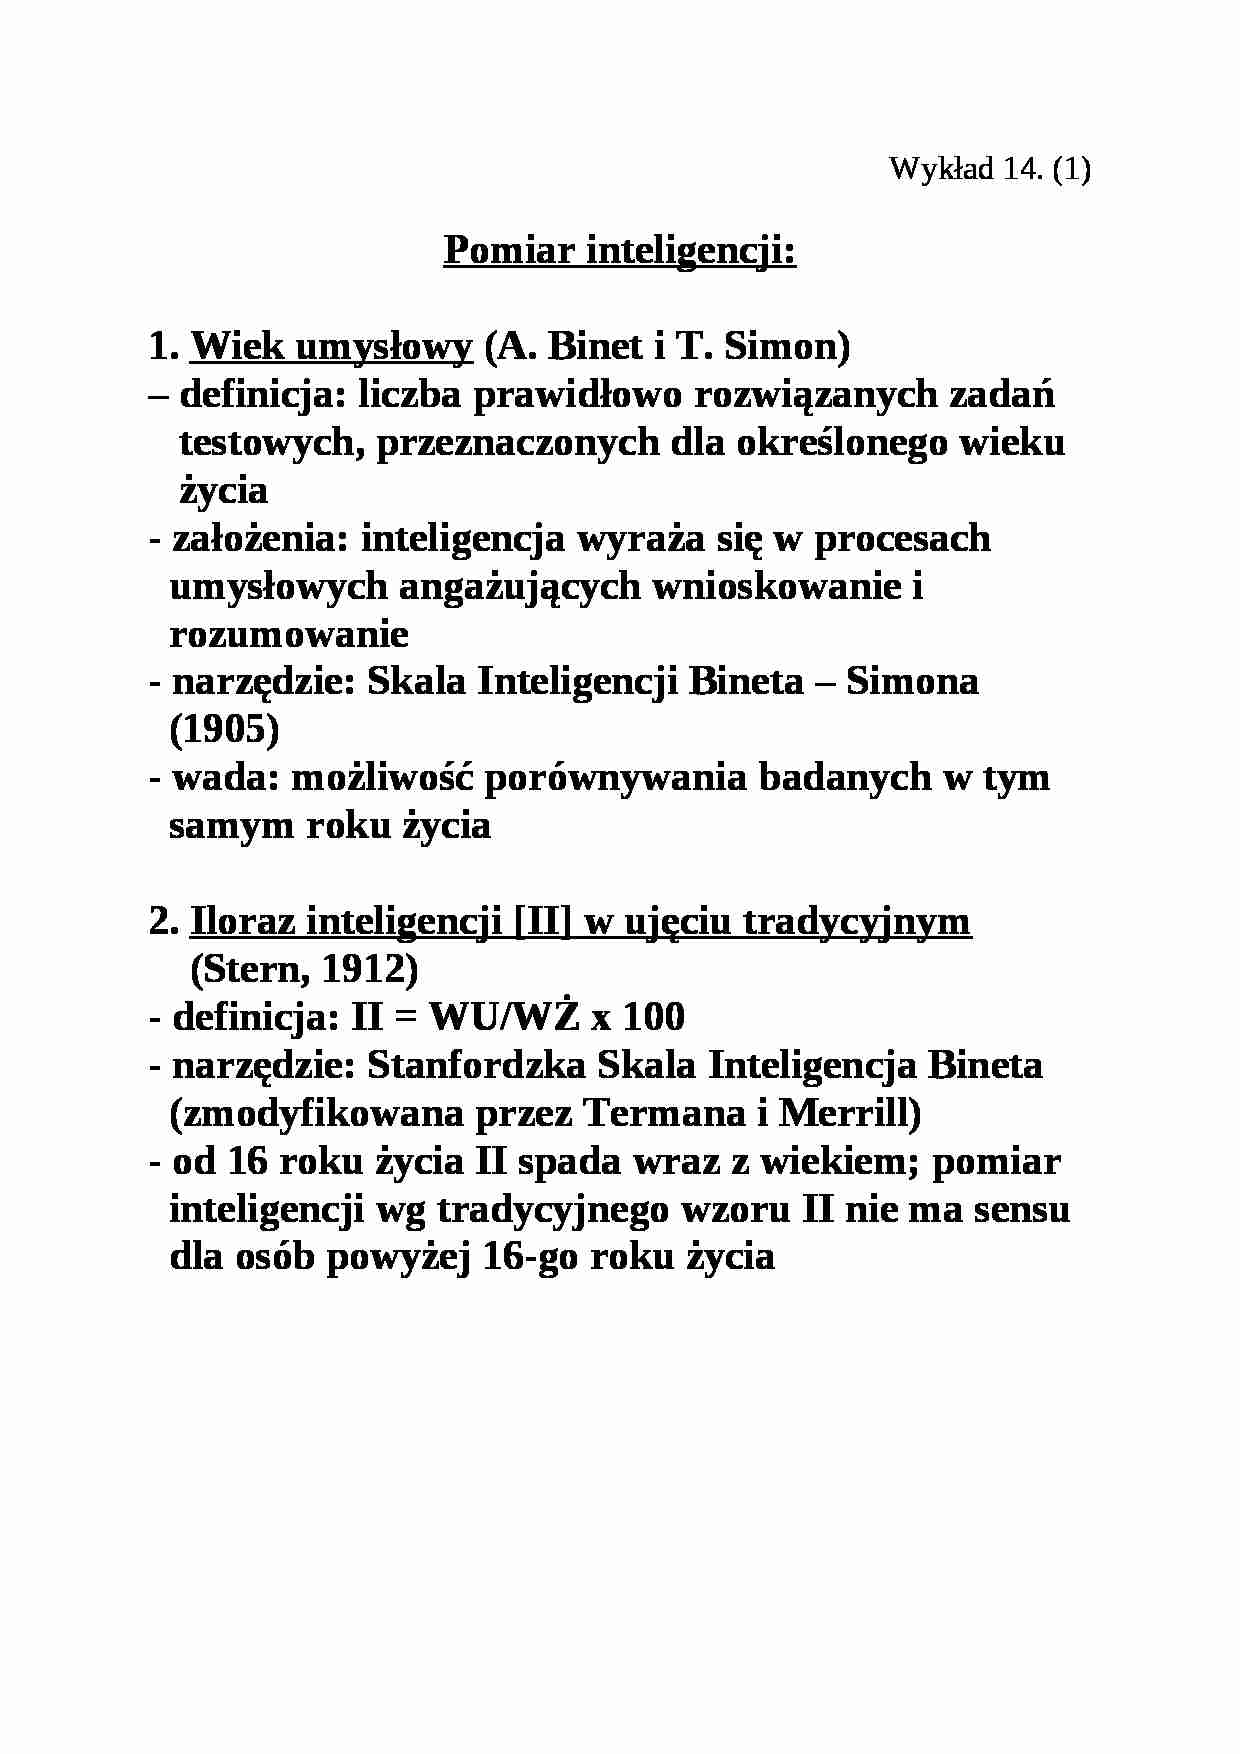 Pomiar inteligencji - wykład nr 14 - strona 1